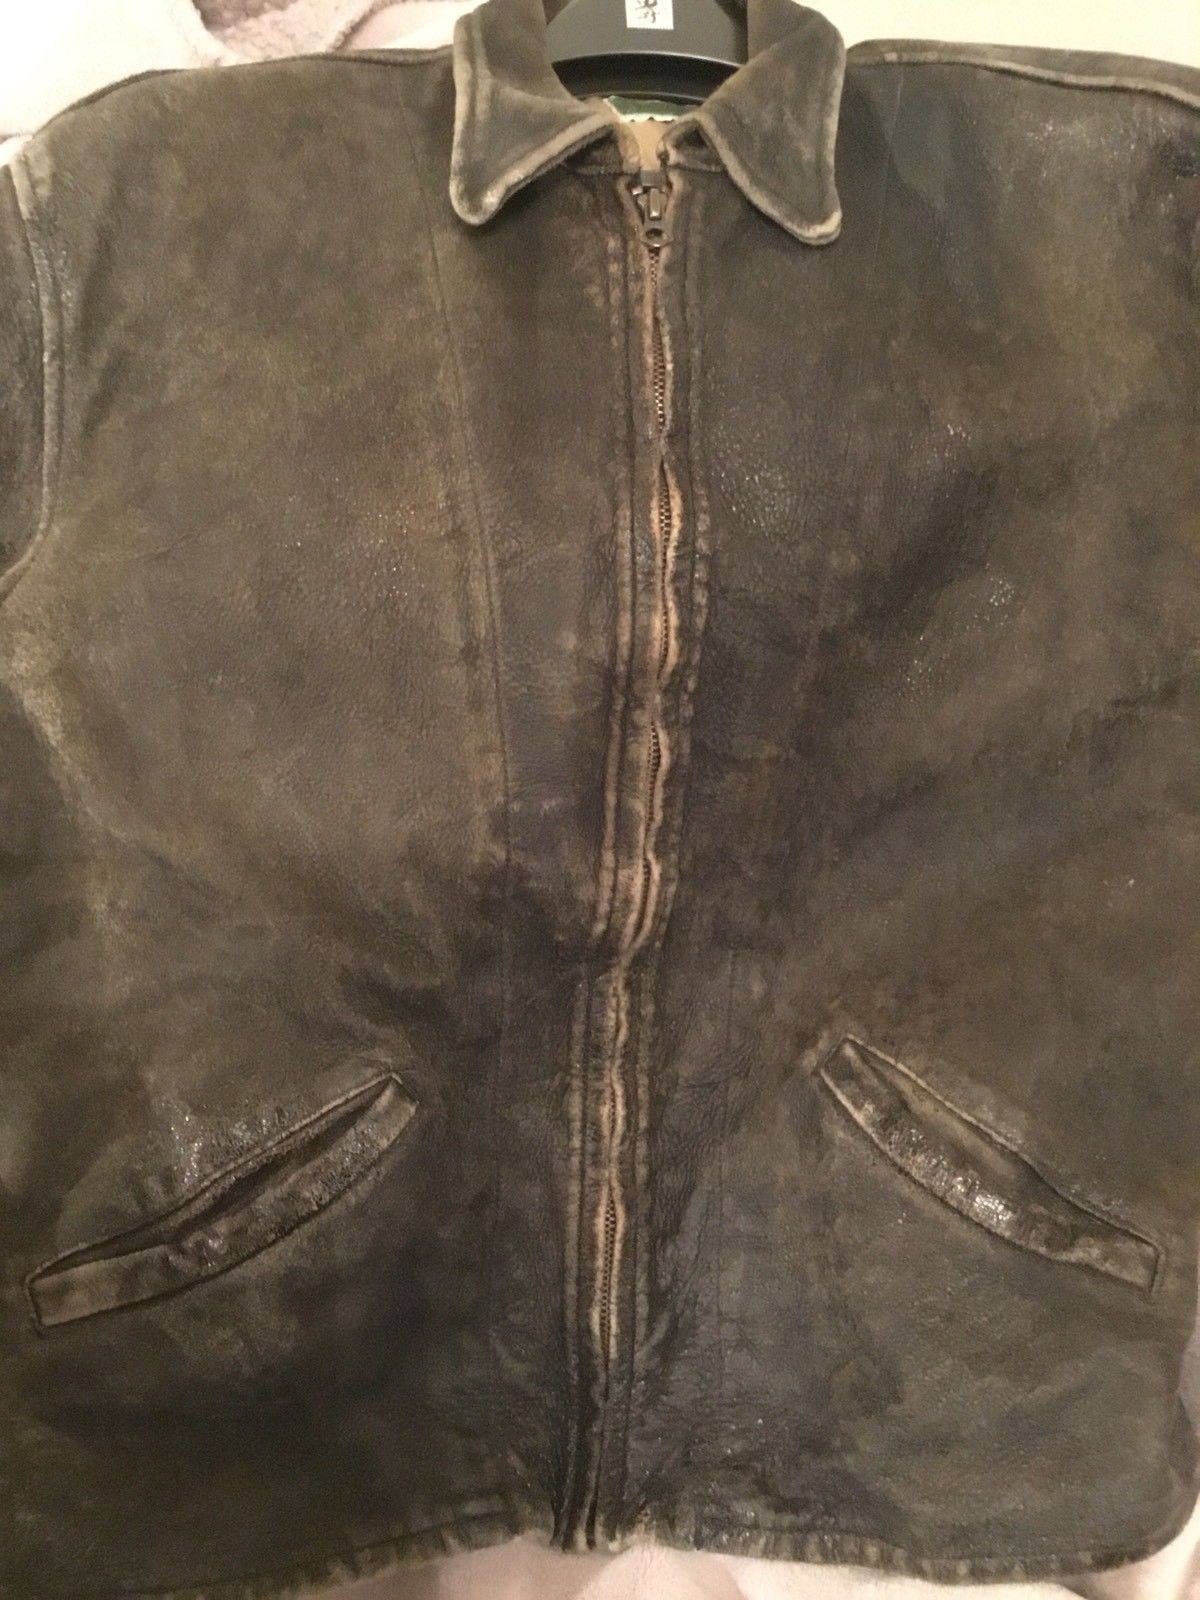 levi's vintage clothing 1930s leather jacket